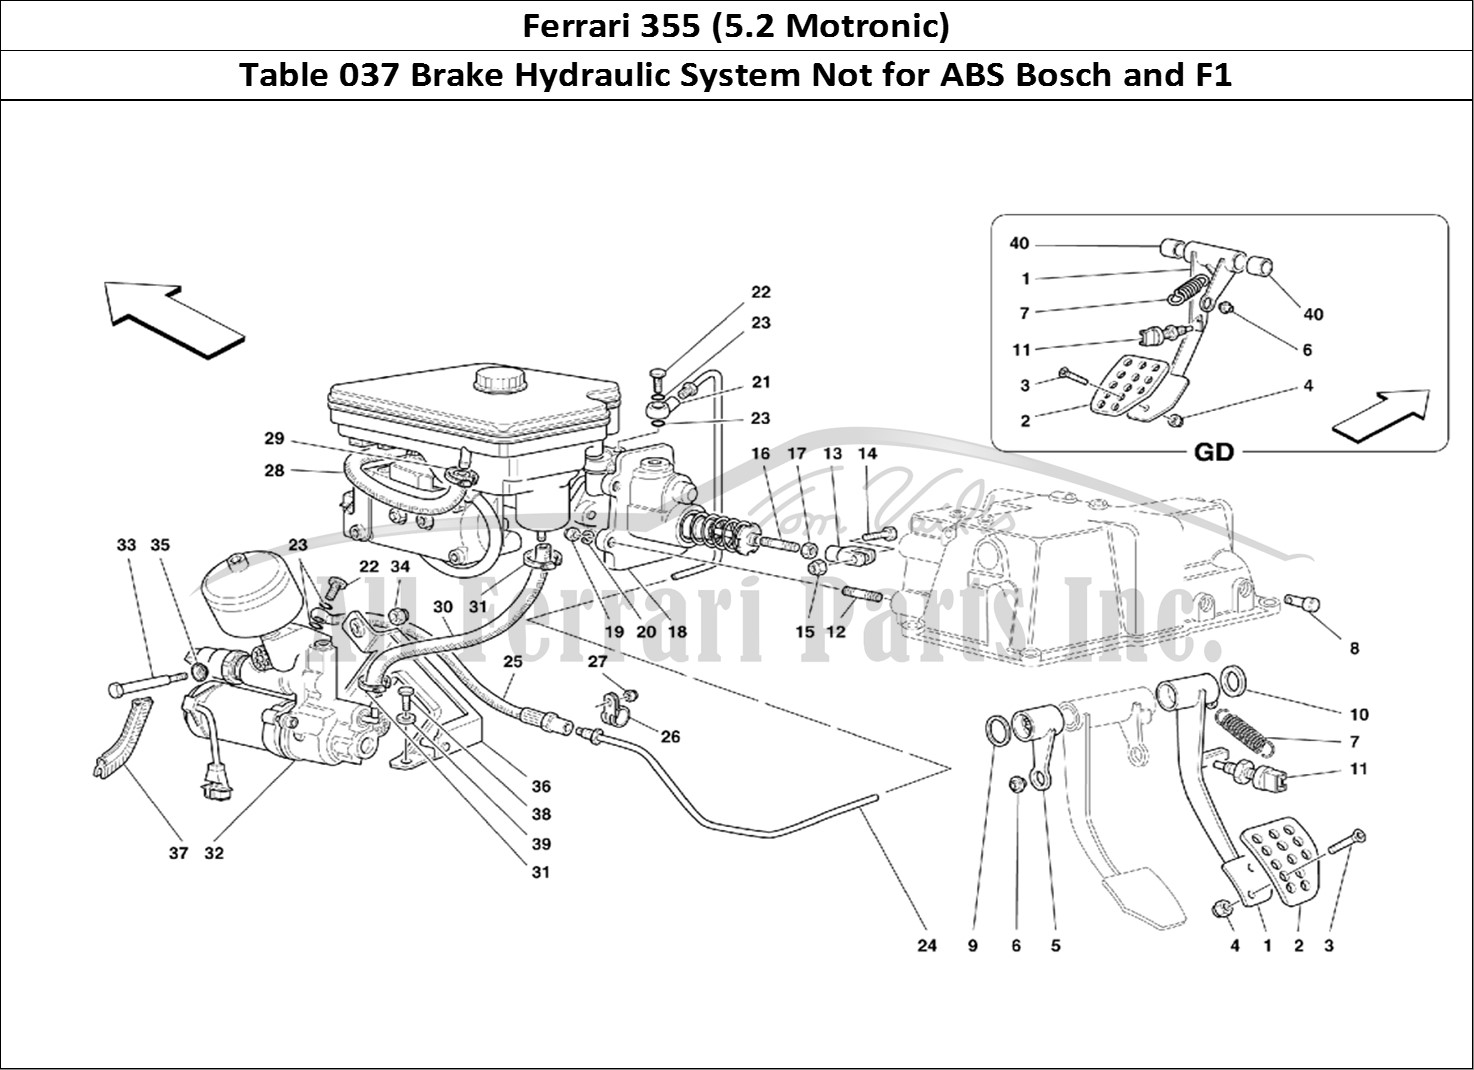 Ferrari Parts Ferrari 355 (5.2 Motronic) Page 037 Brake Hydraulic System -N